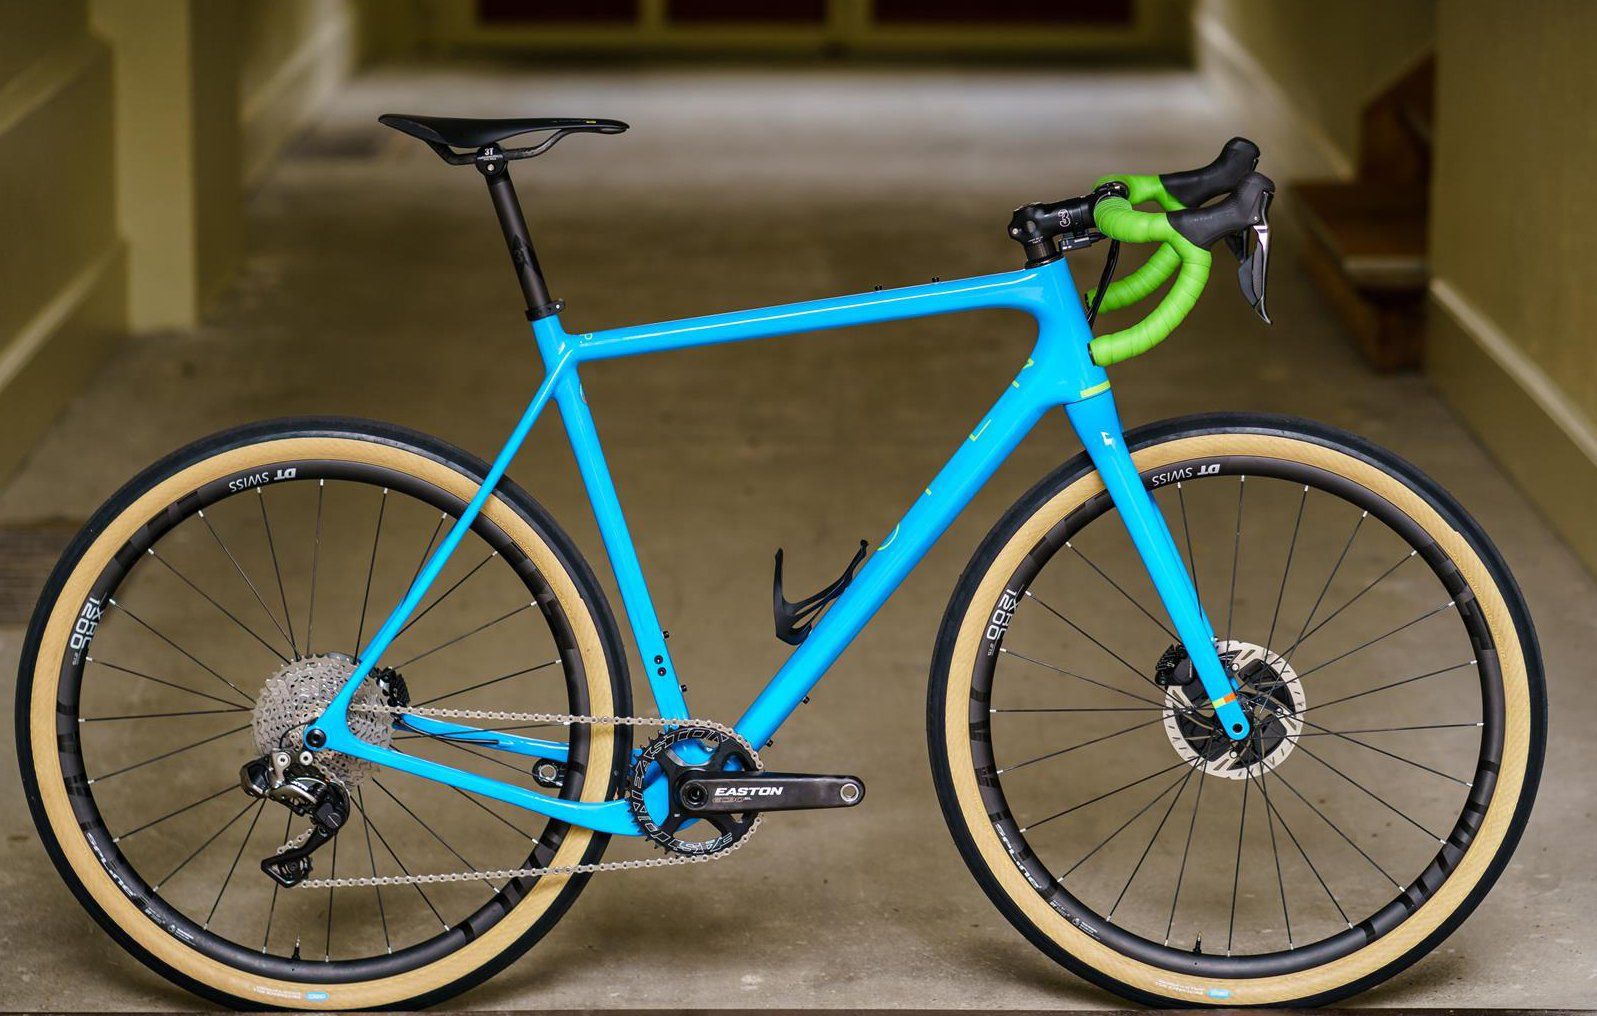 Гравийный велосипед голубой. Гравийный велосипед голубого цвета. Голубой Blue Gravel велосипед. CX open up Bicycle.